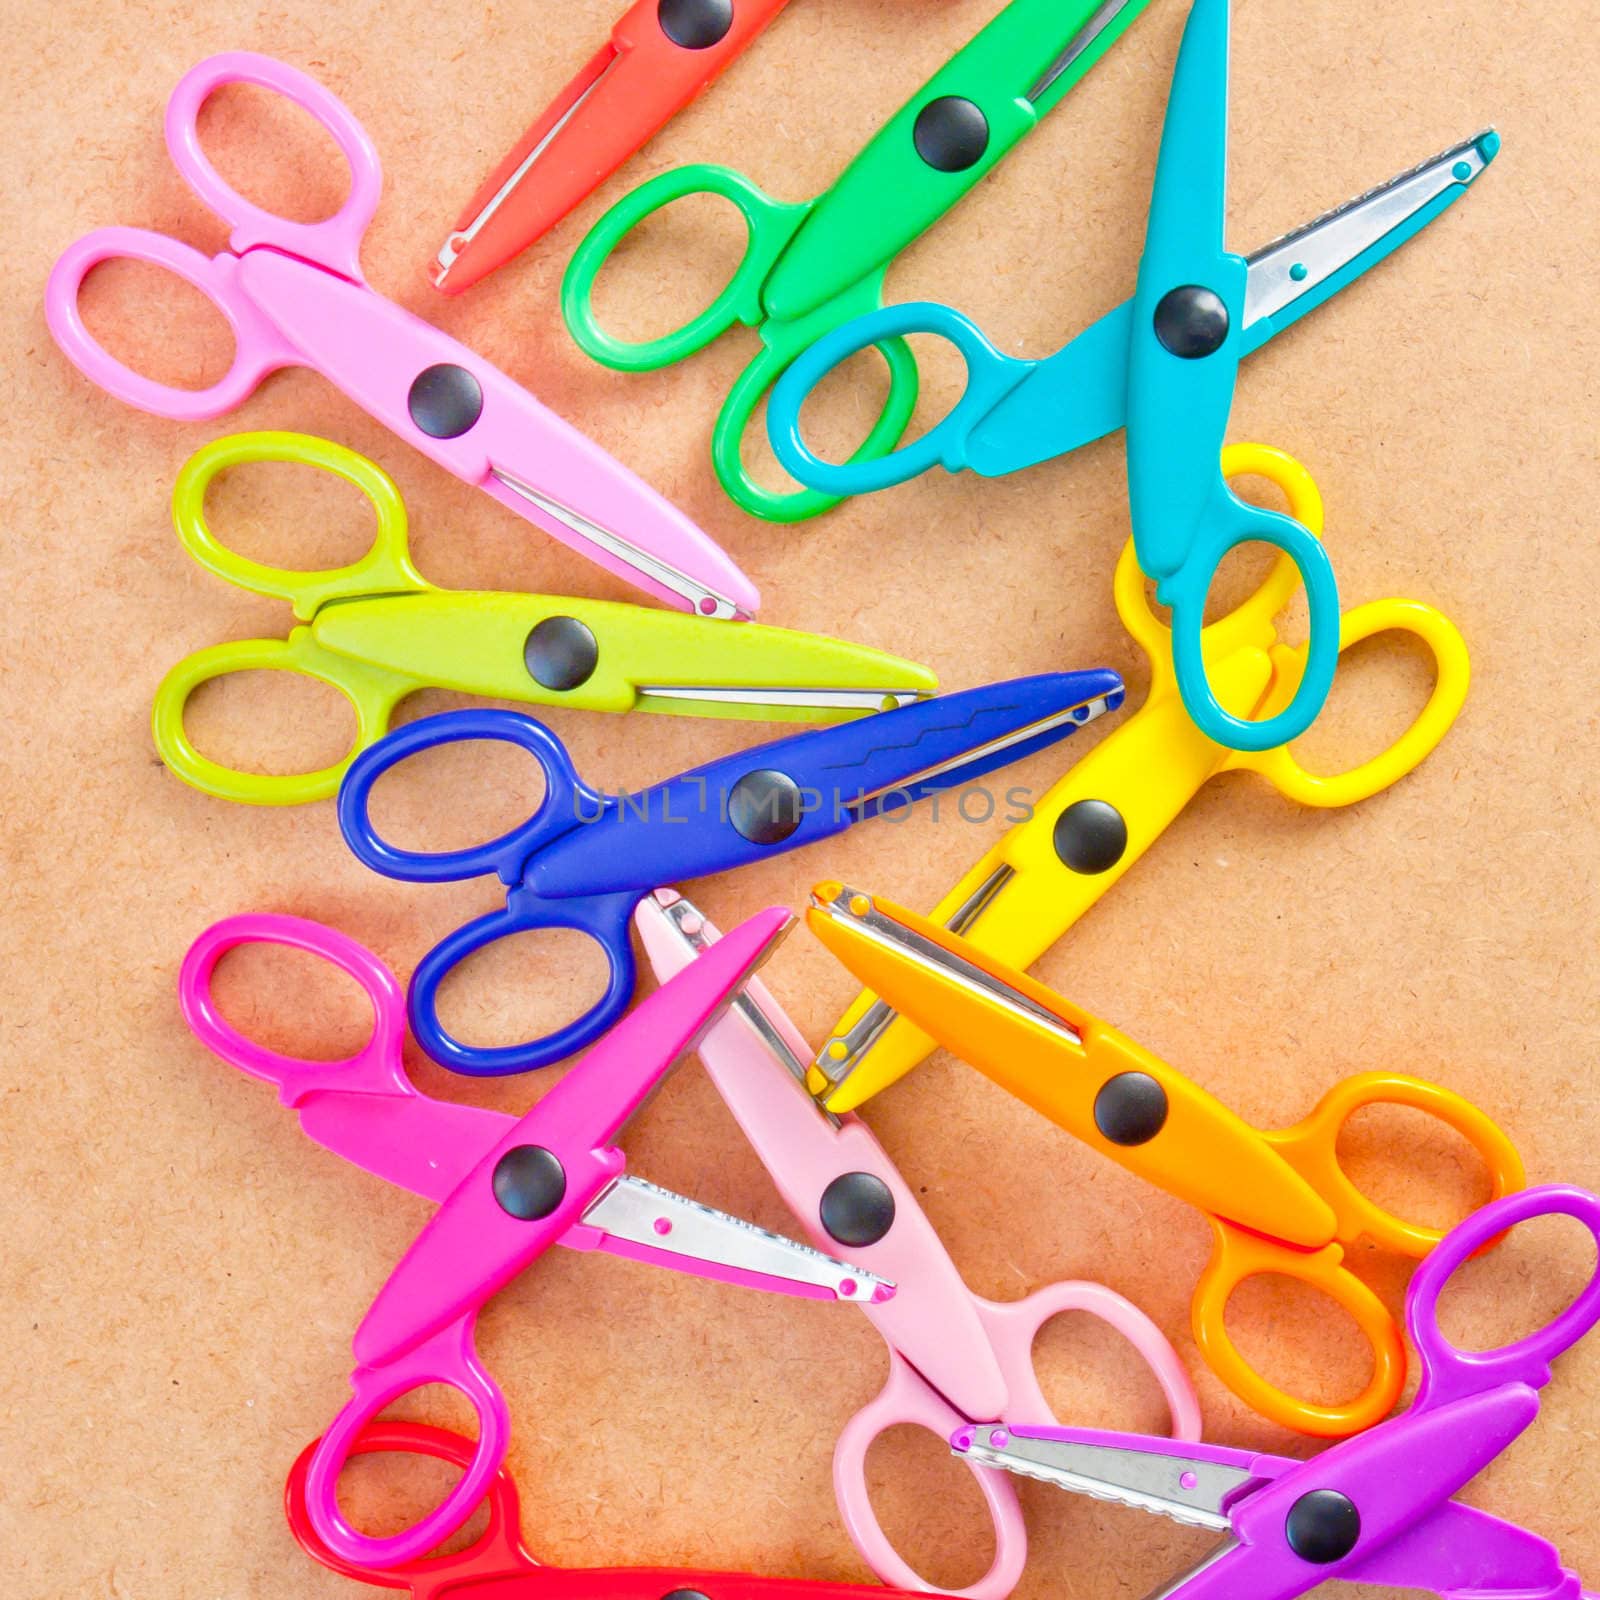 scissors by trgowanlock